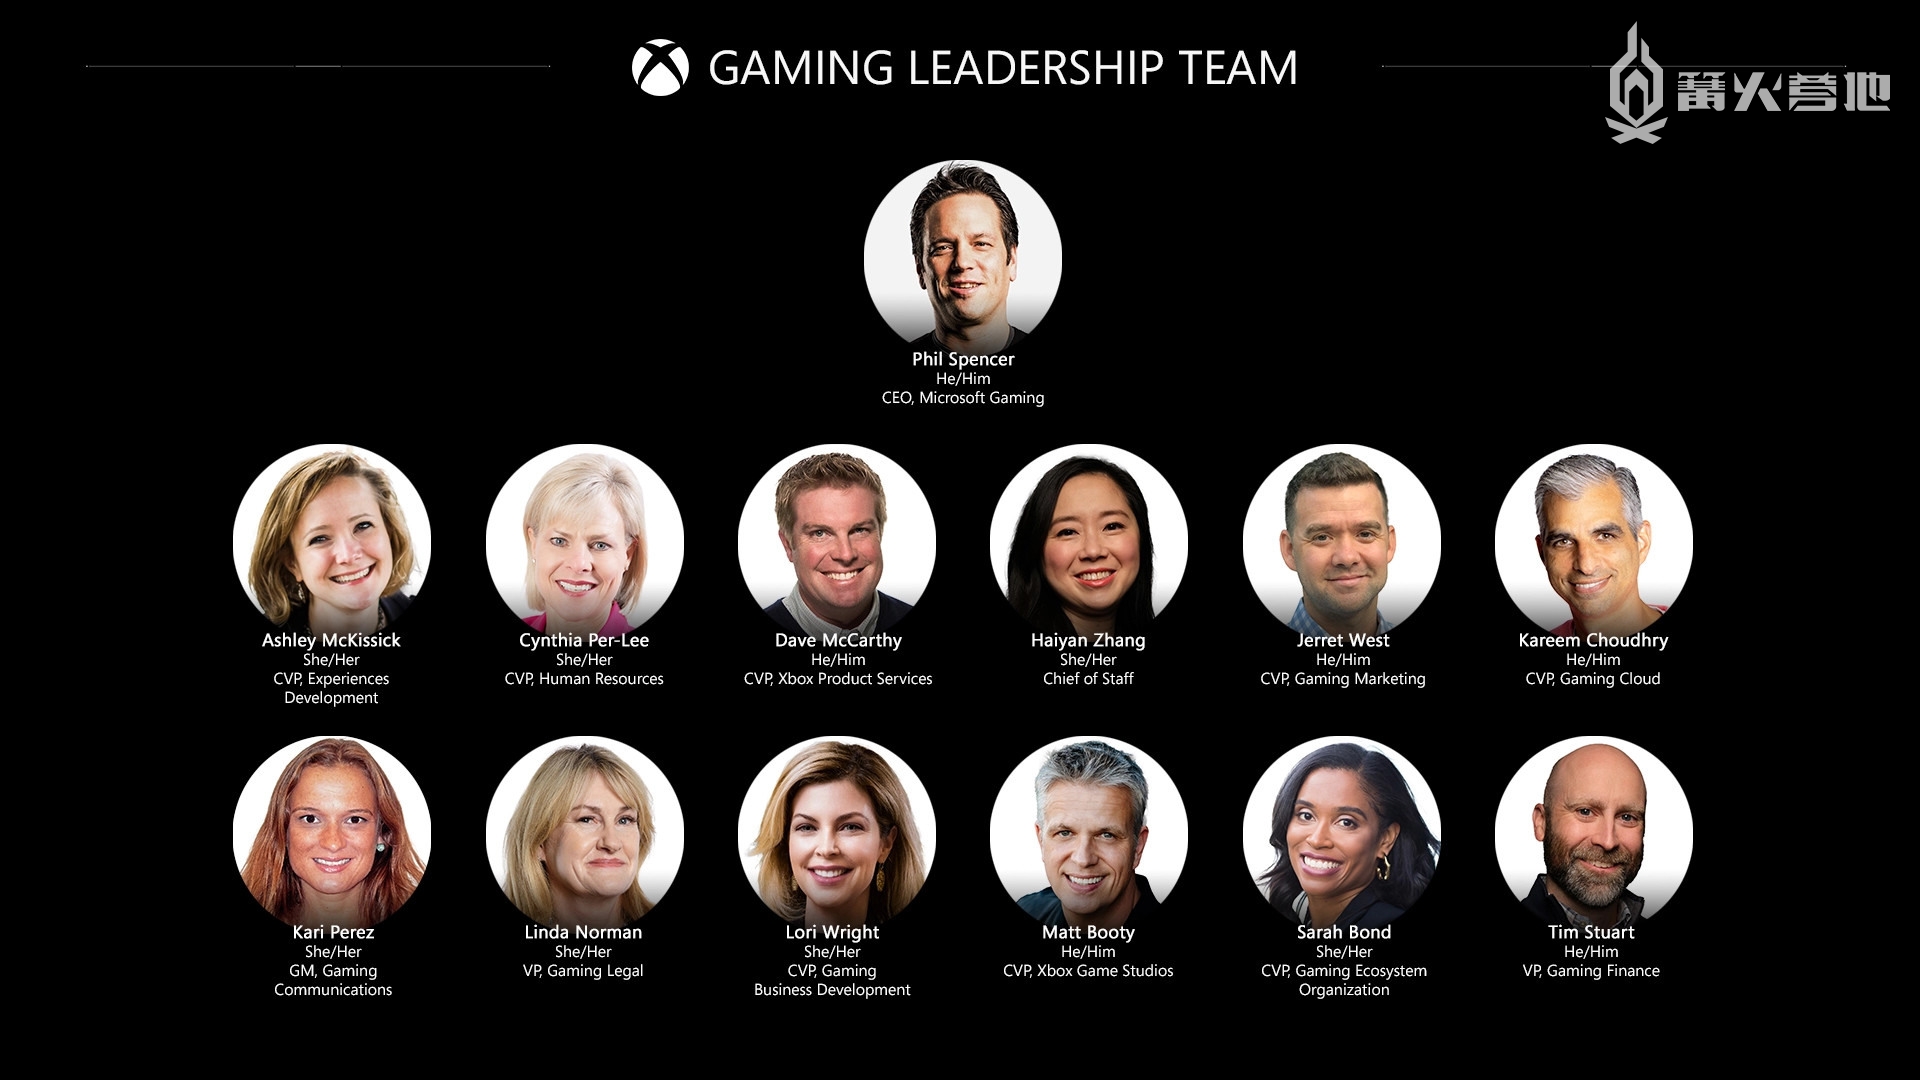 本次发布也公开了将要领导 Xbox 游戏业务的团队阵容，包括任命菲尔·斯宾塞为微软游戏的首席执行官